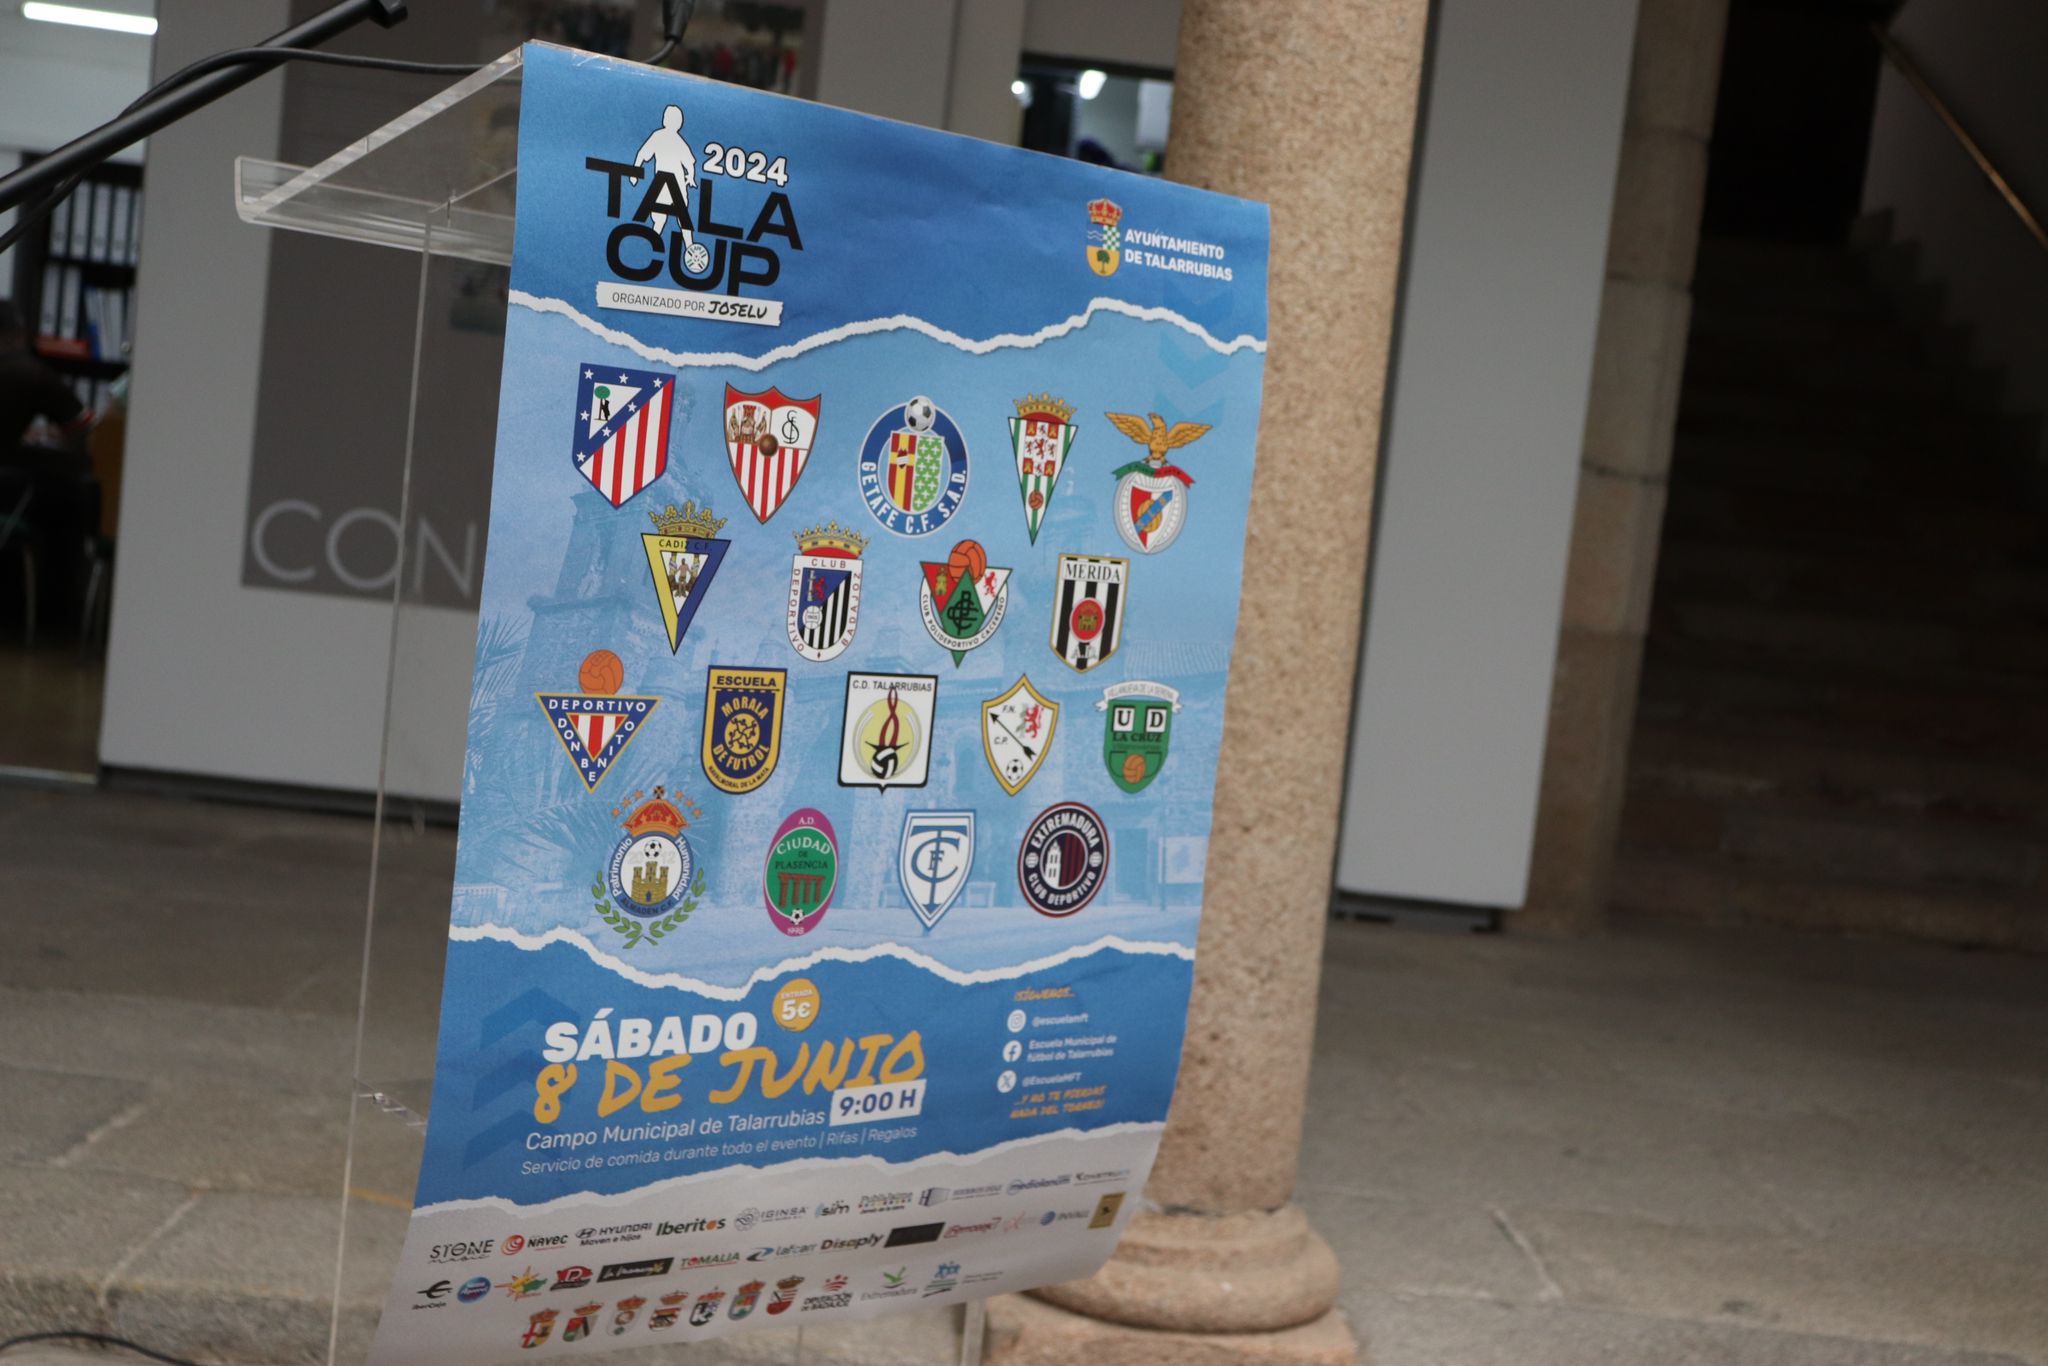 Image 2 of article Unos 800 menores participarán en Extremadura en la tercera edición del torneo de fútbol base Tala Cup